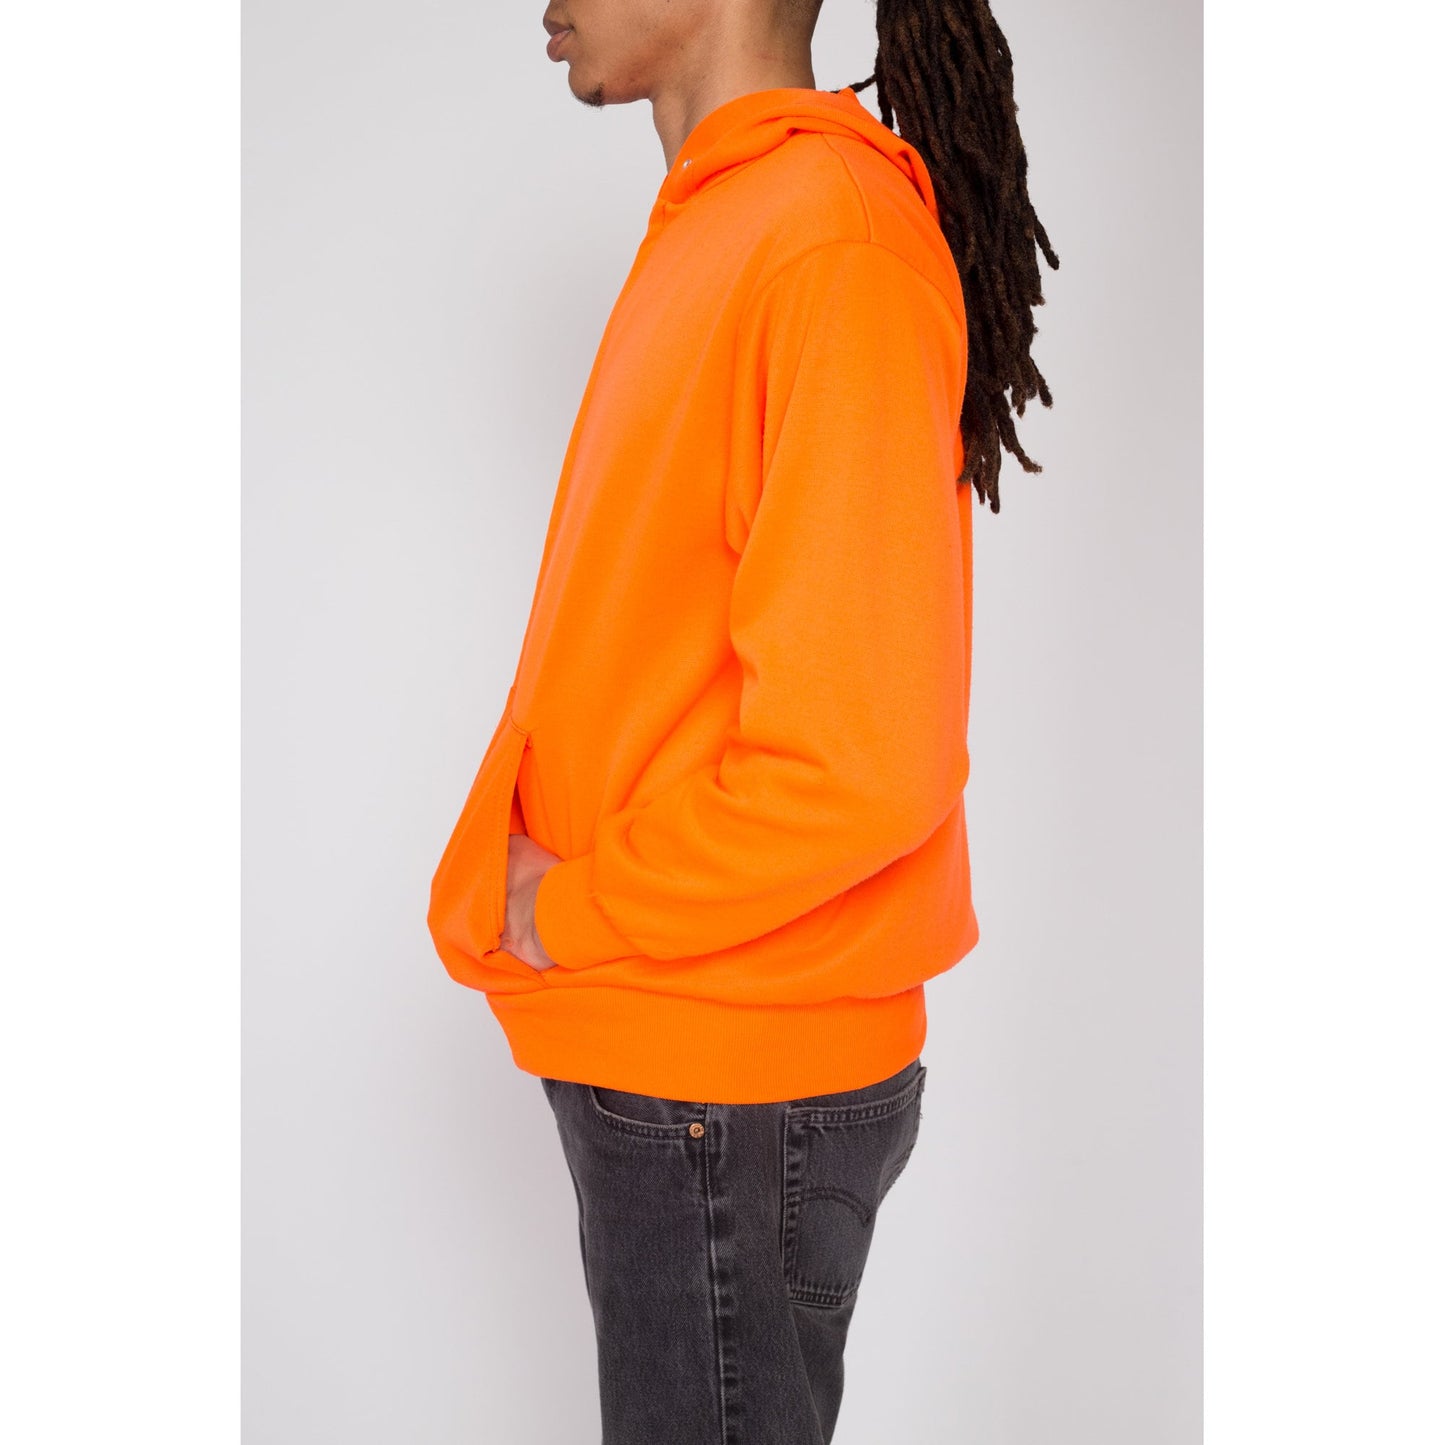 Med-Lrg 80s Neon Orange Zip Up Hoodie | Vintage Plain Hooded Sweatshirt Track Jacket